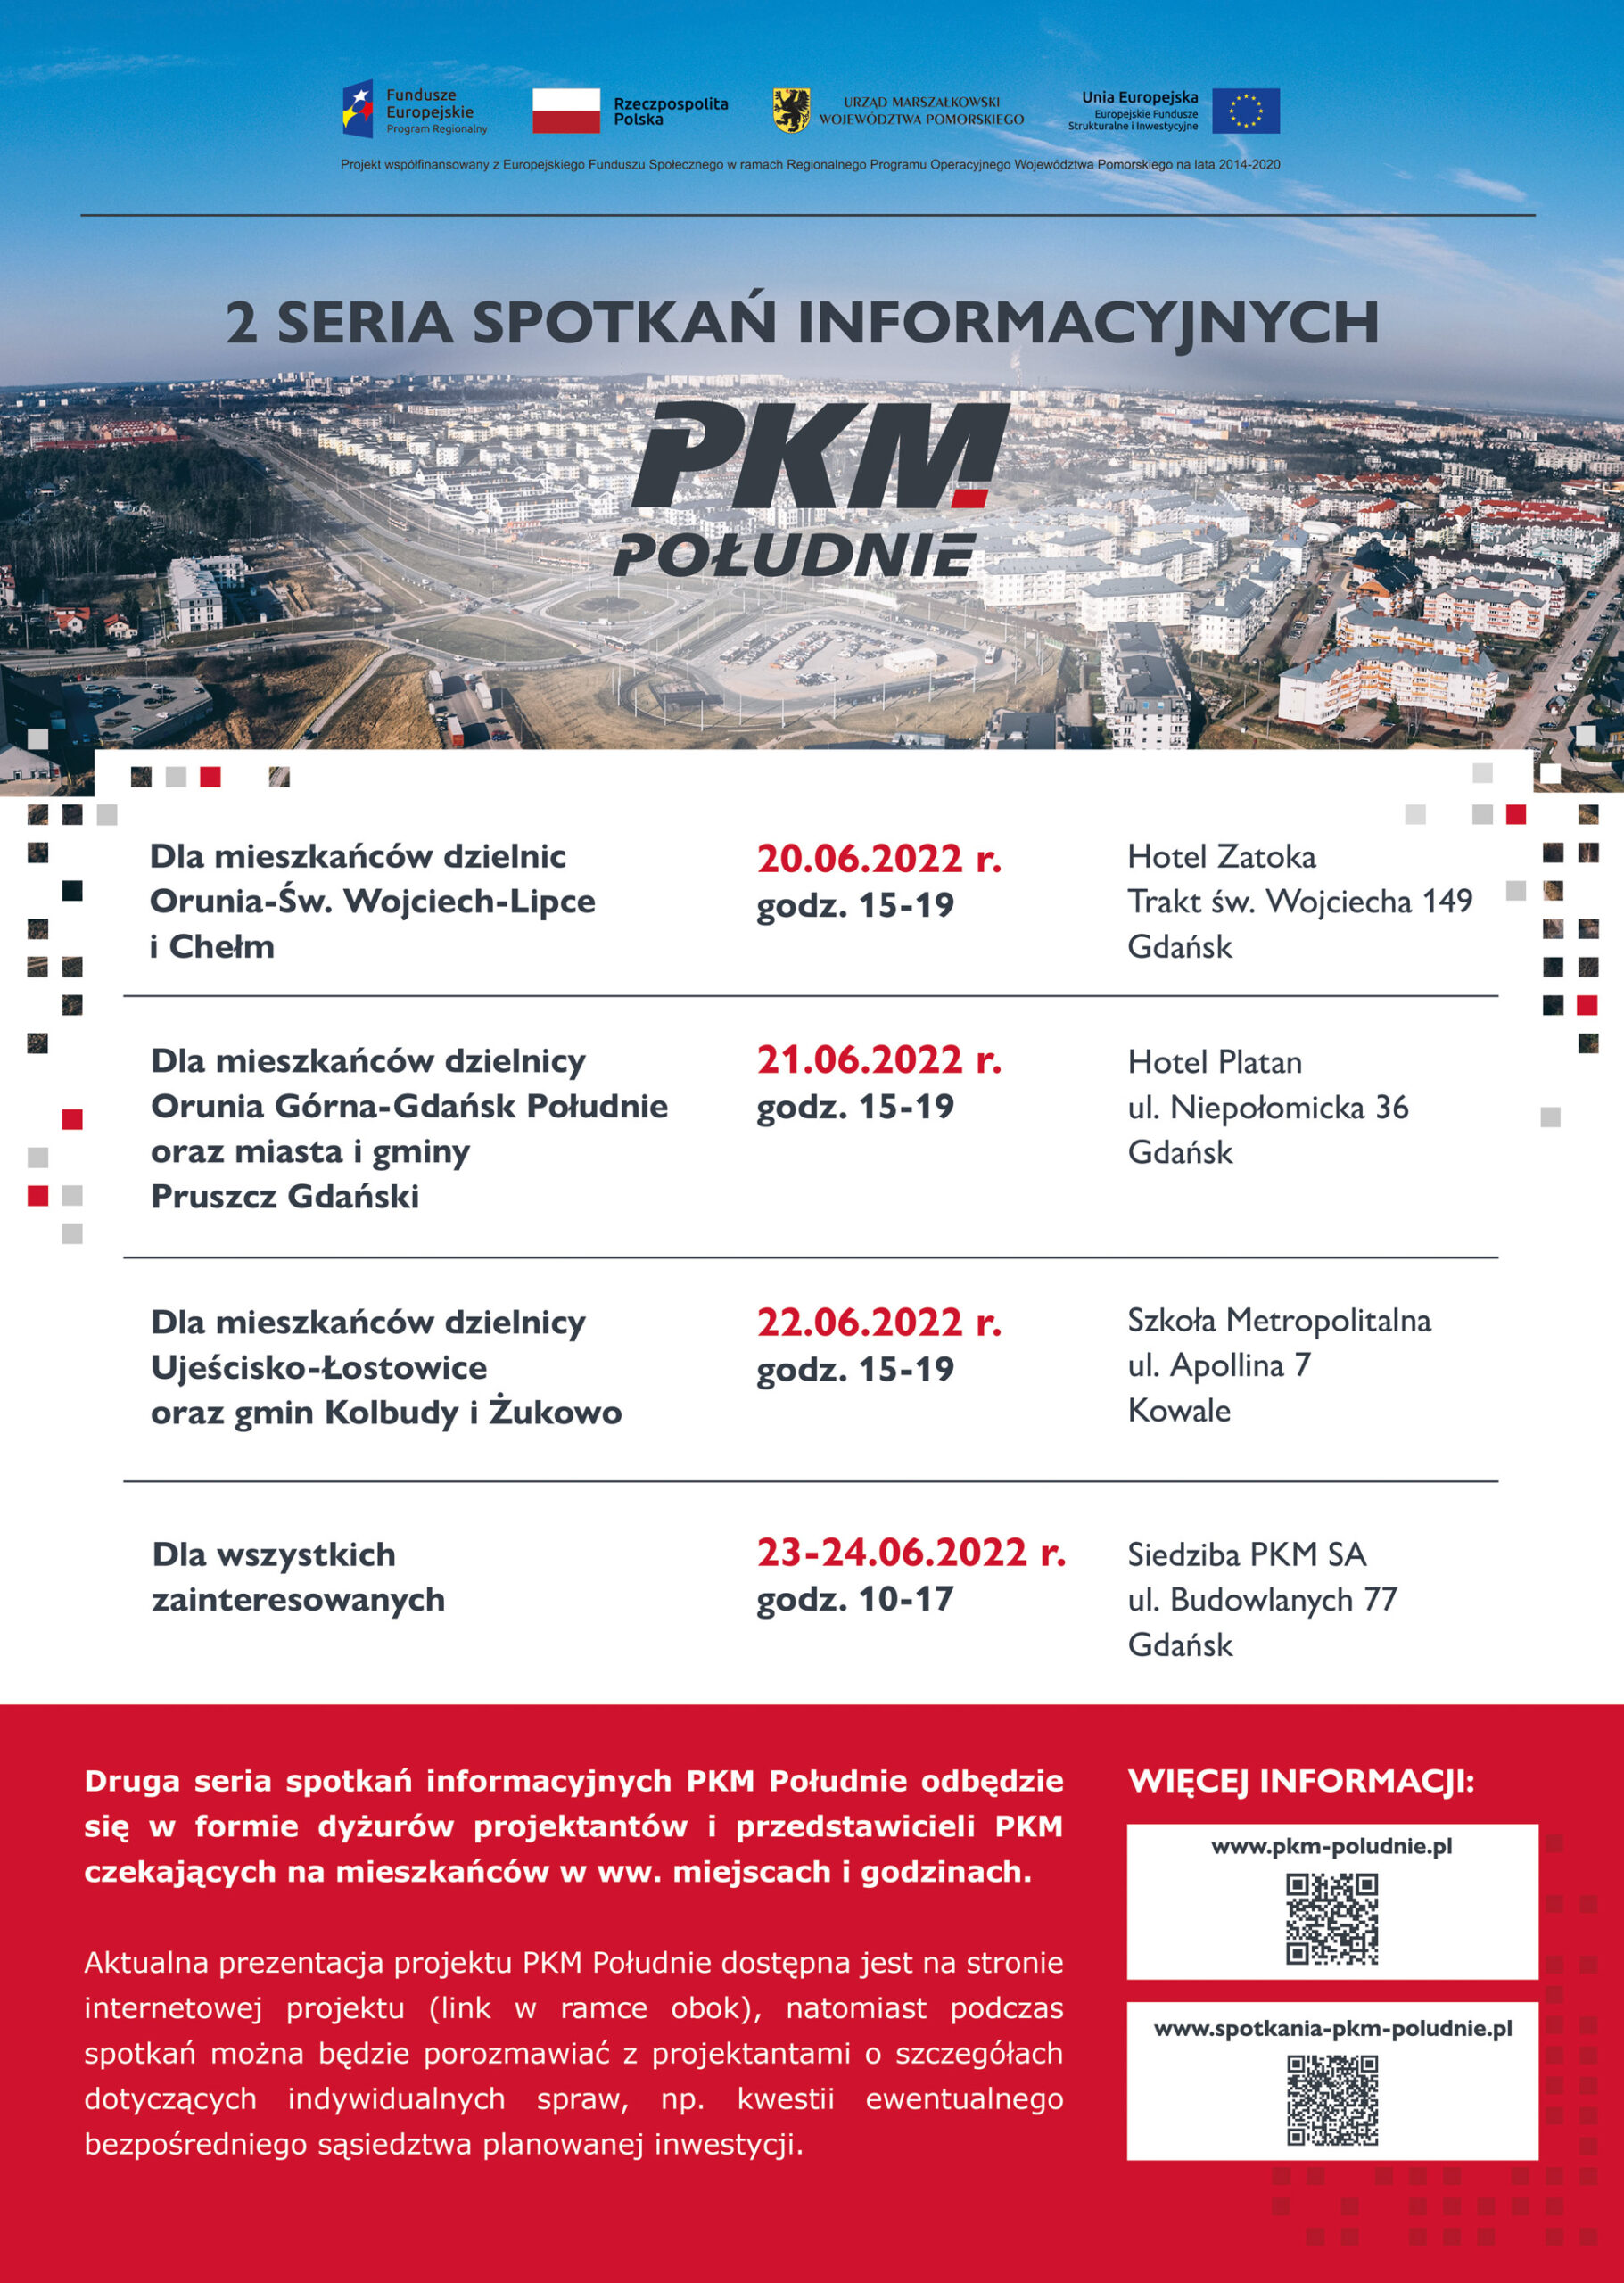 Plakat zapowiadający 2 serię spotkań informacyjnych projektu PKM Południe